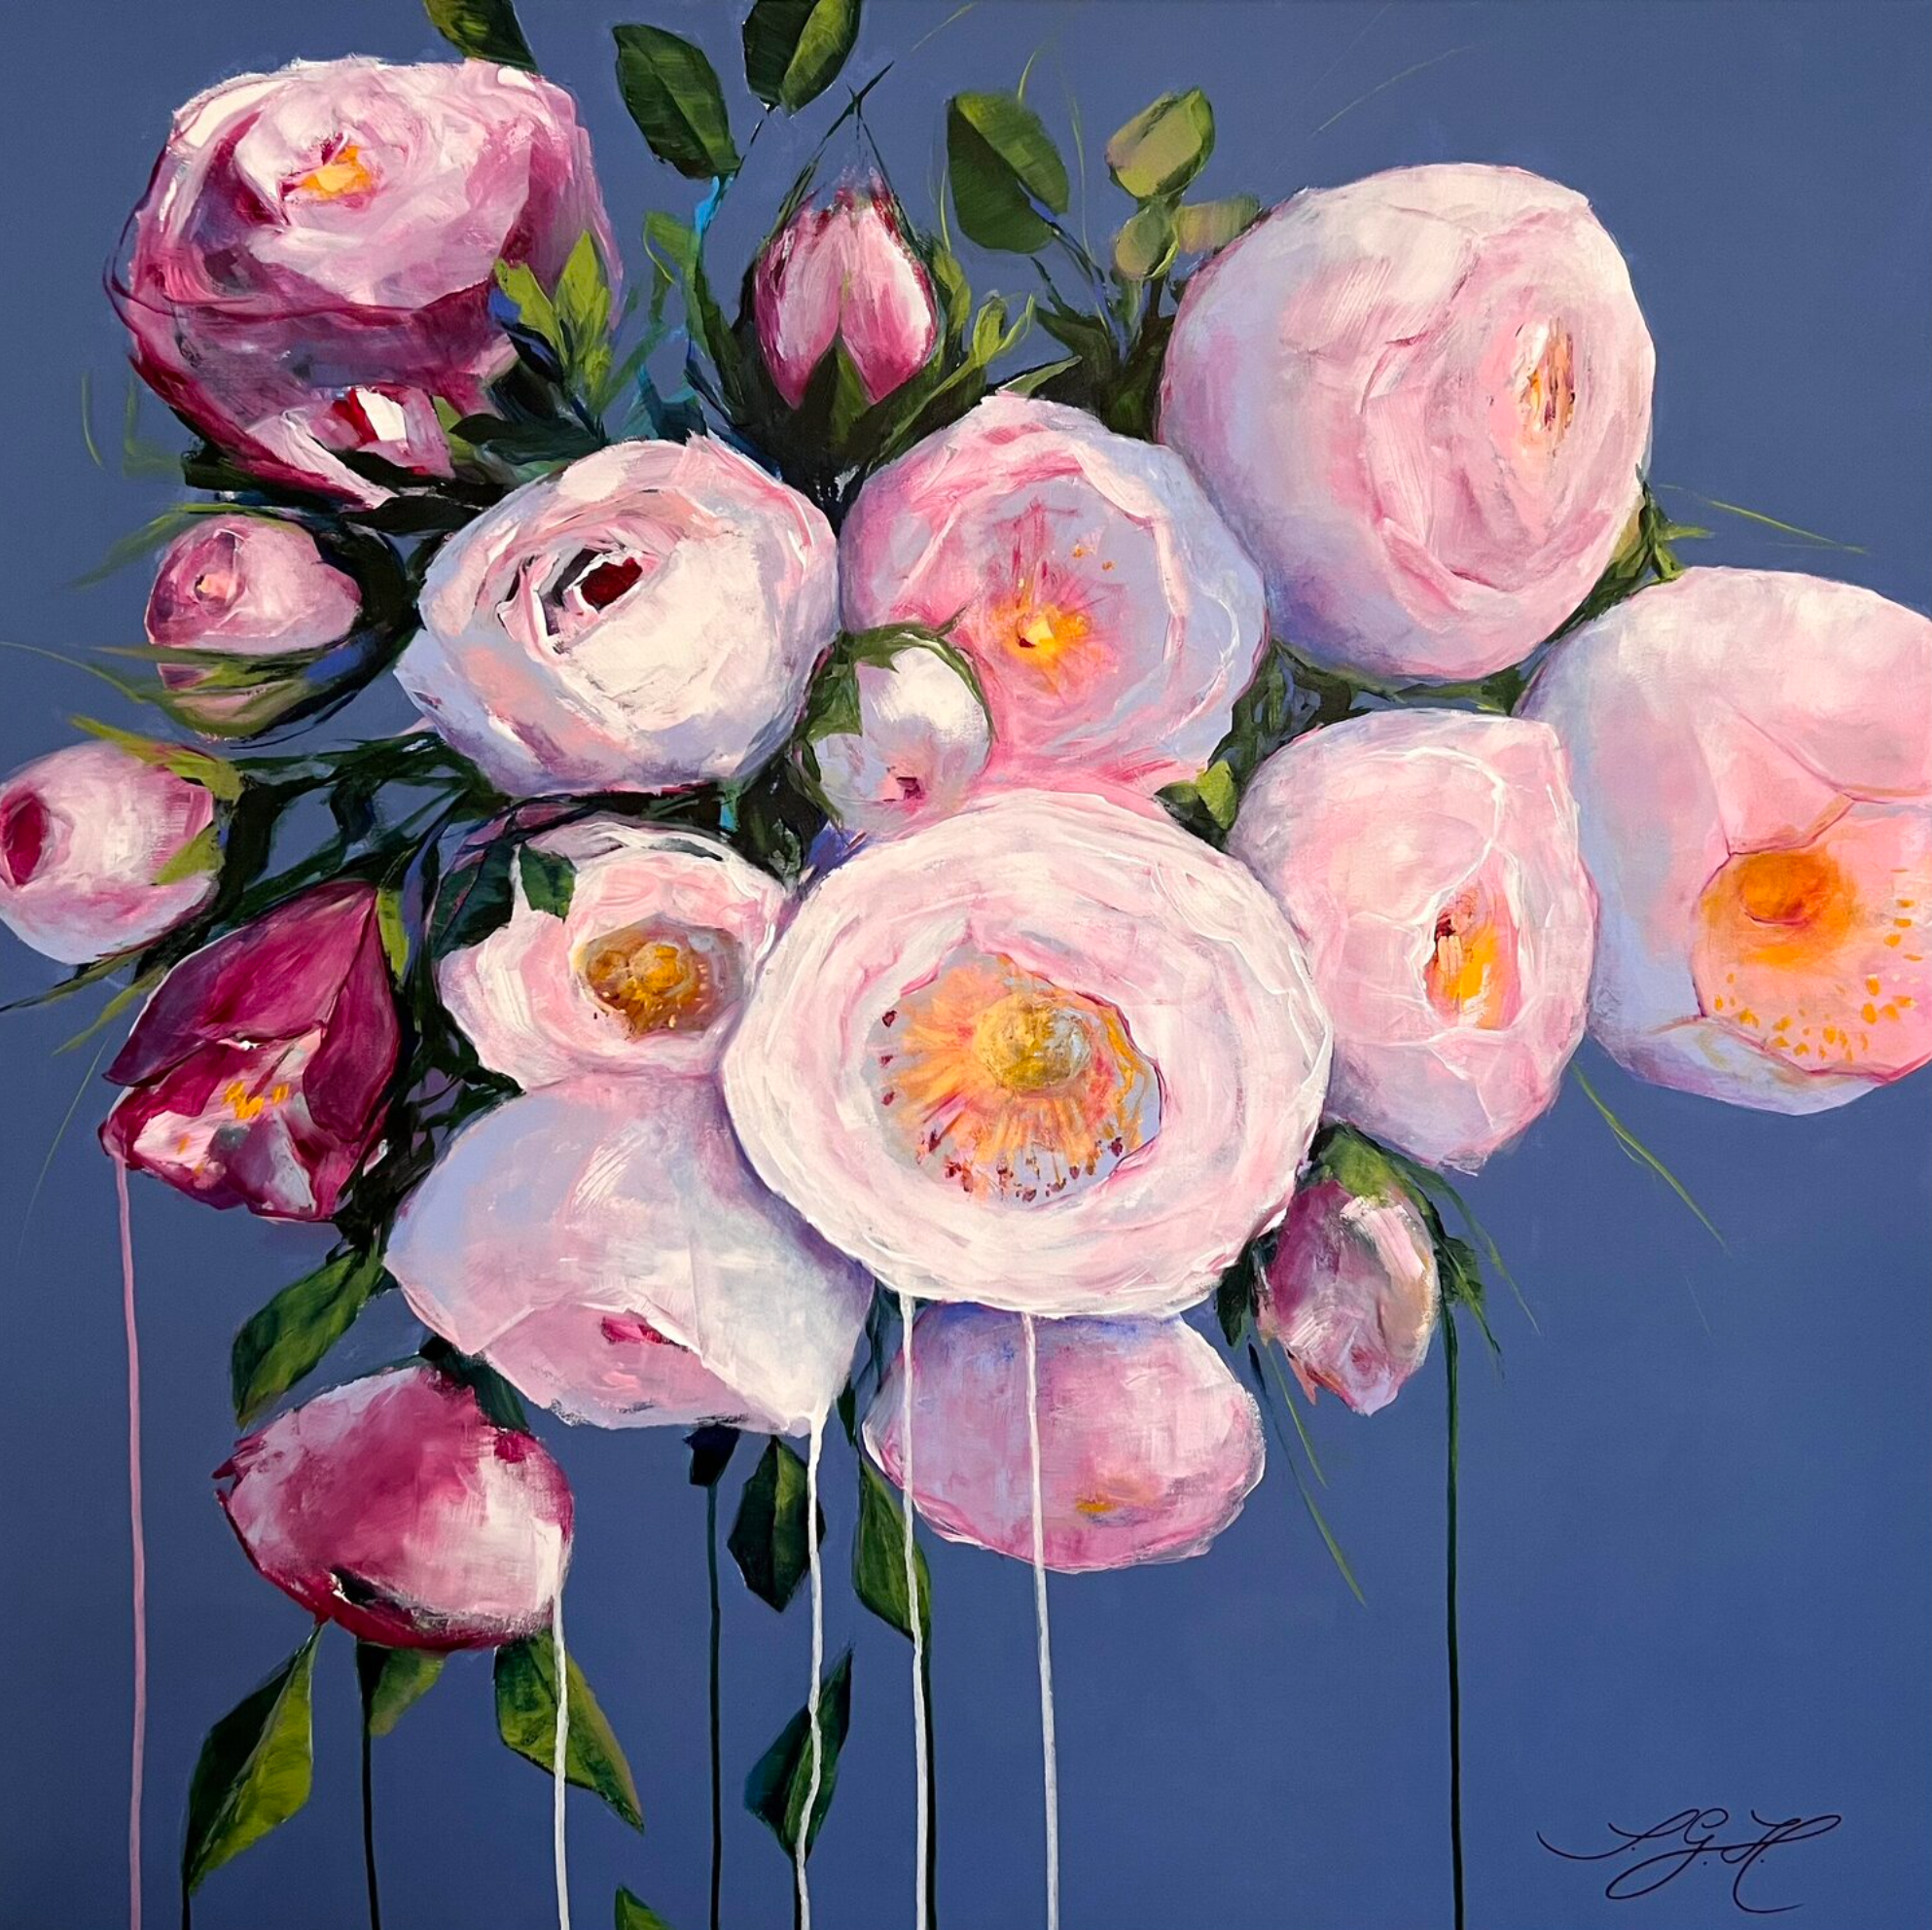 En los coloridos cuadros "Big Flowers 4" de Sandra Gebhardt-Hoepfner, la artista ha dispuesto rosas blancas, rosadas y rosadas con exuberantes hojas verdes y verde claro sobre un fondo azul paloma. Son las rosas del año de su jardín de verano en Hamburgo. Las flores blancas y rosas brillan a la luz del sol.